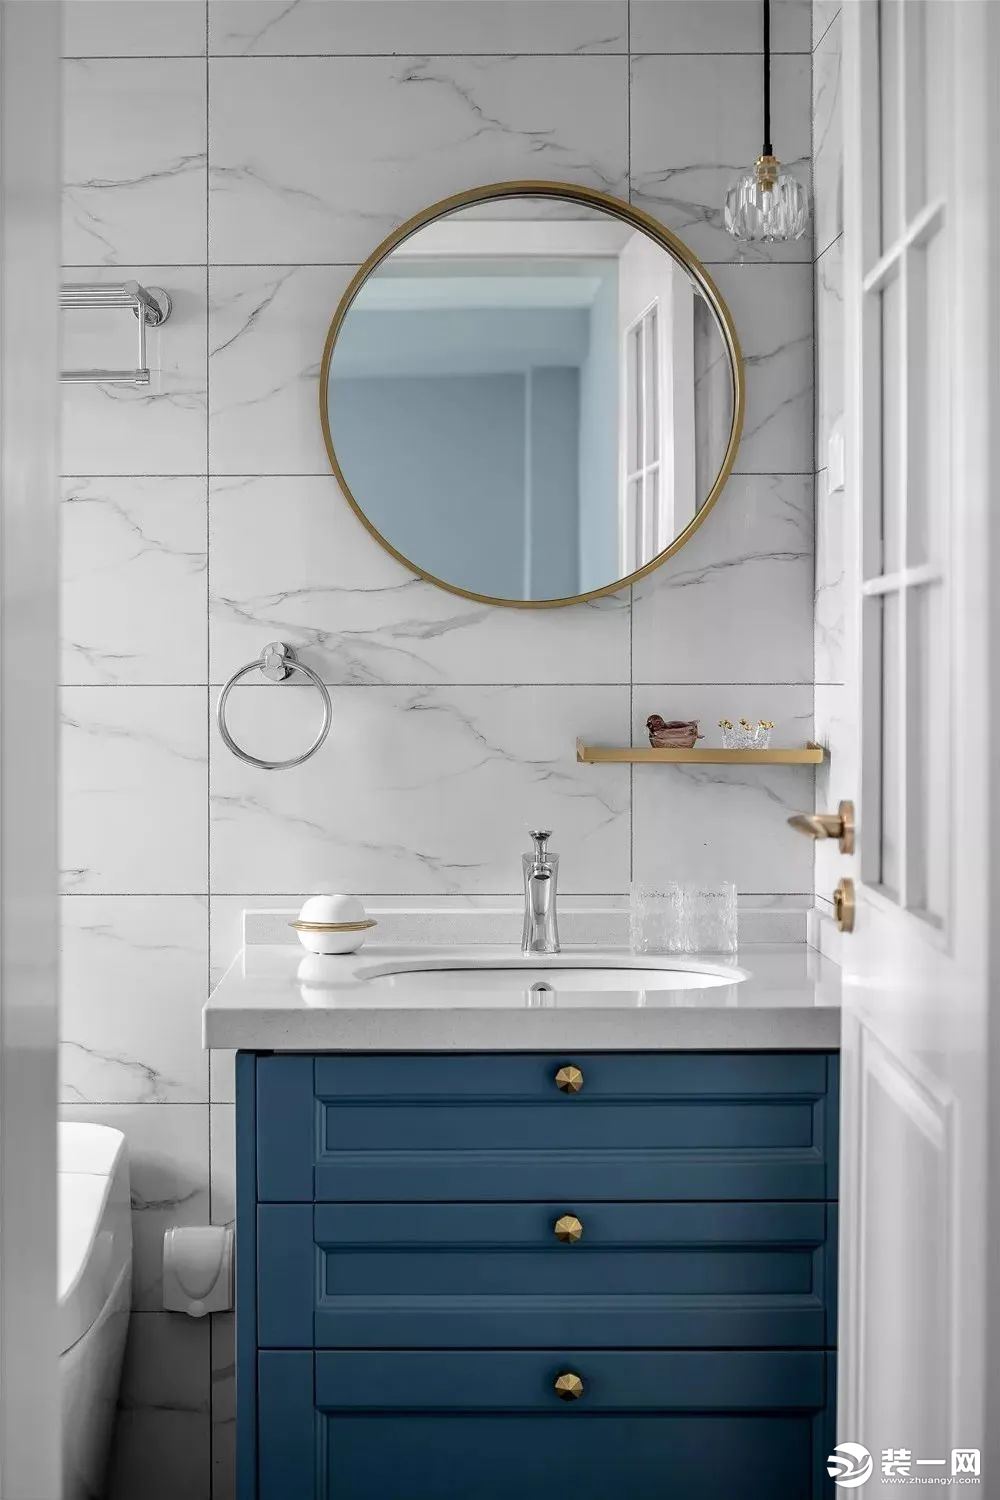 卫生间内铺贴了白色的大理石瓷砖，深蓝色的浴室柜让卫生间看起来更有格调。